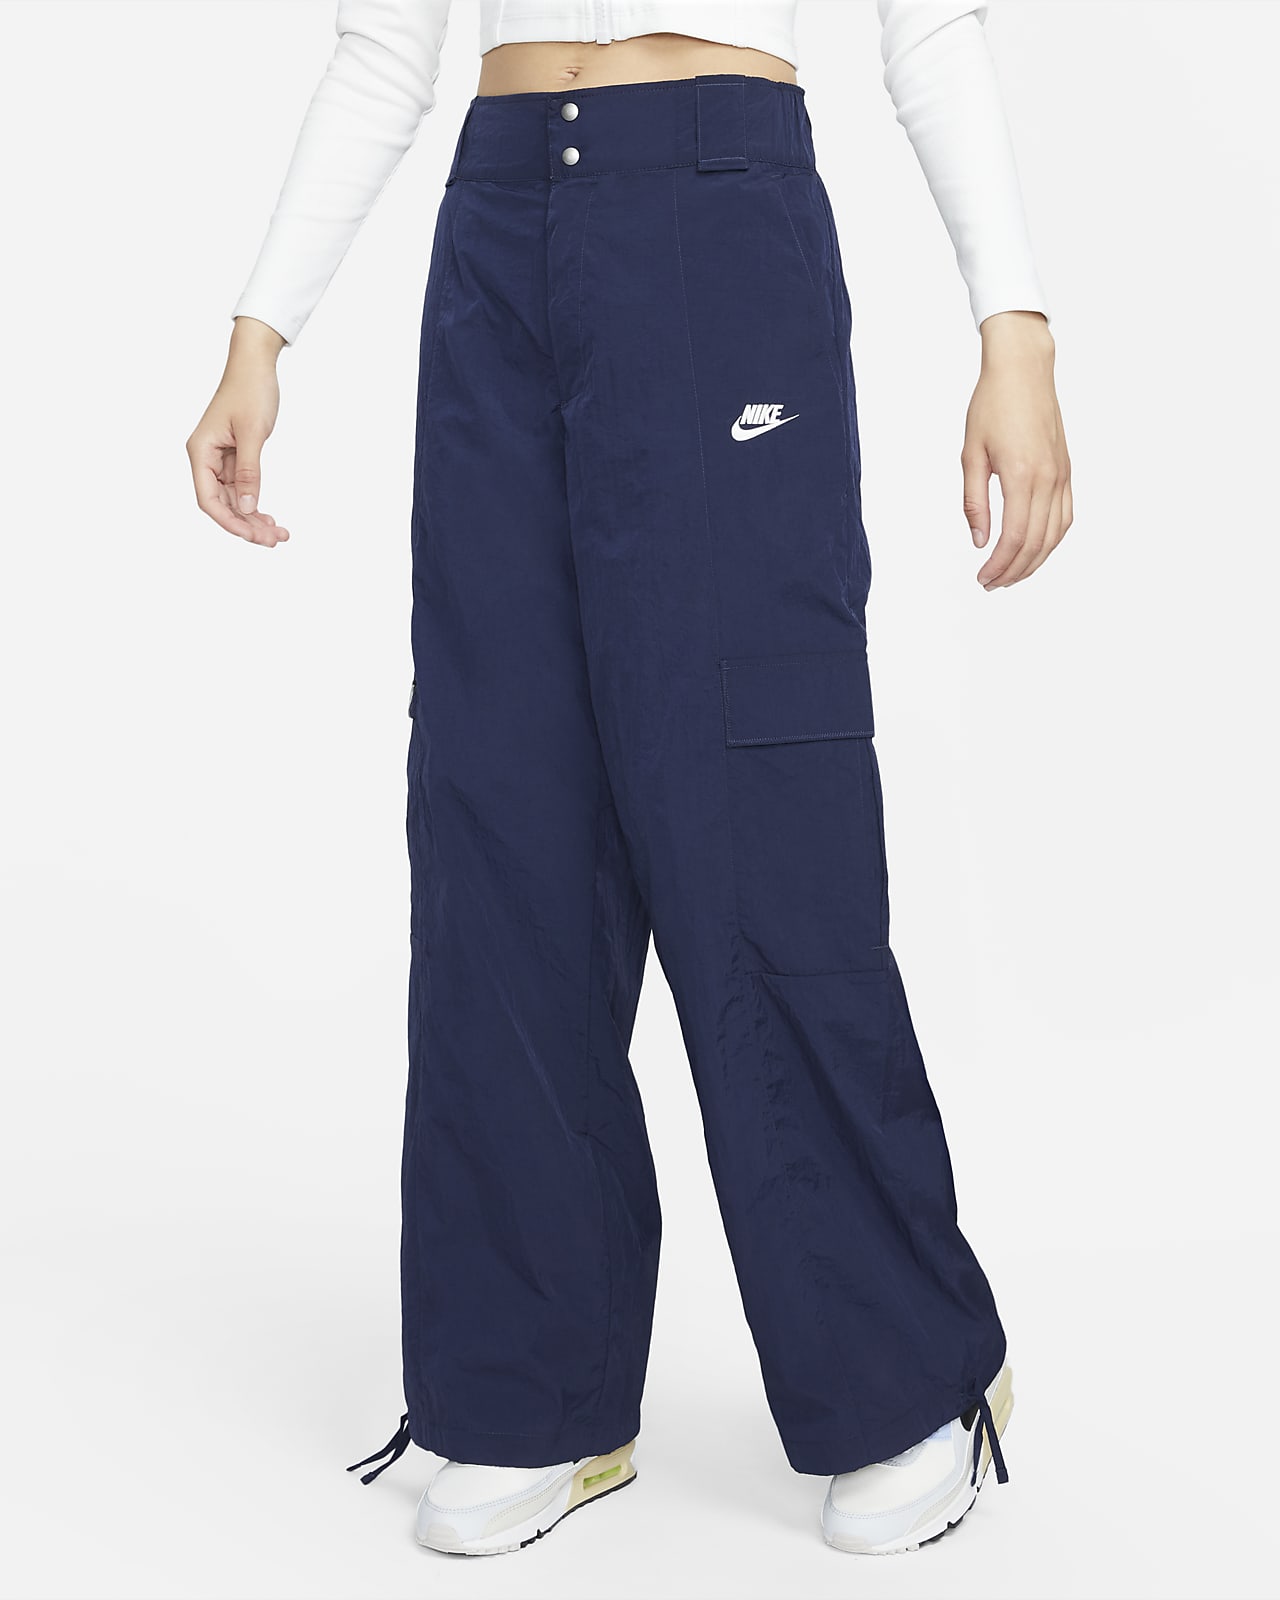 Nike Womens Sportswear Woven Cargo Pants  Macys